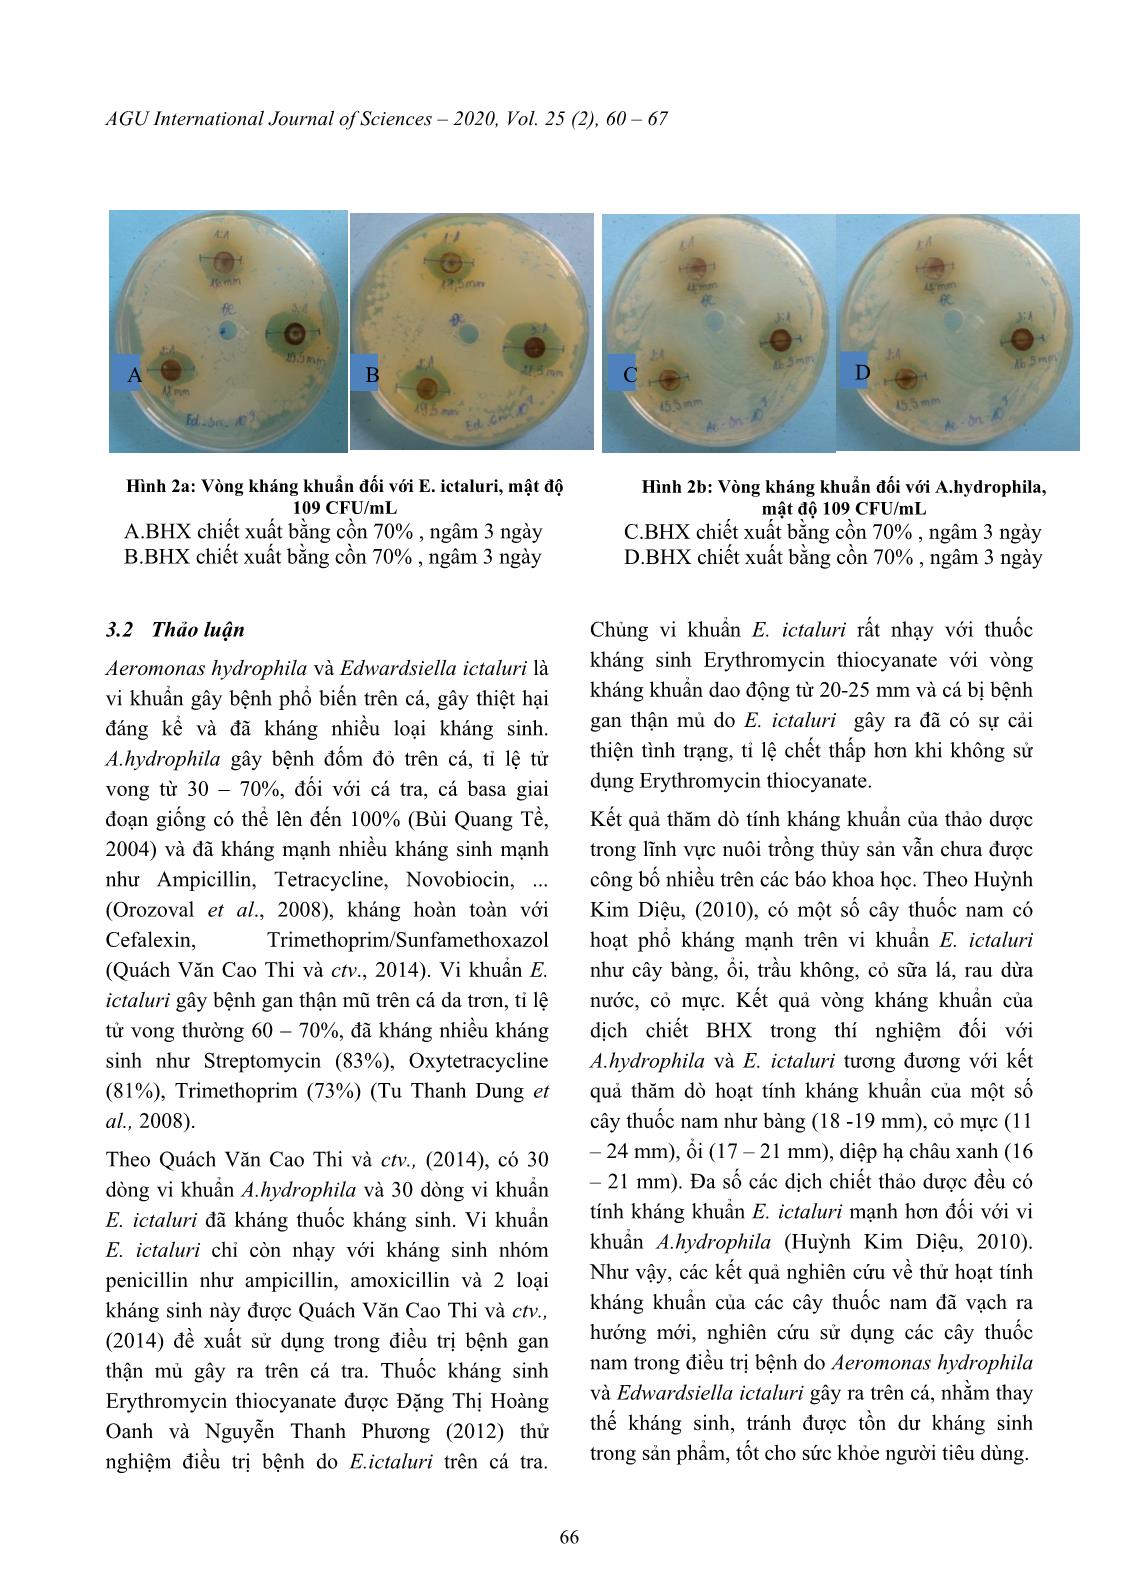 Xác định tính kháng khuẩn của dịch chiết bạch hoa xà (Plumbago zeylanica L.) đối với vi khuẩn Aeromonas hydrophila trang 7